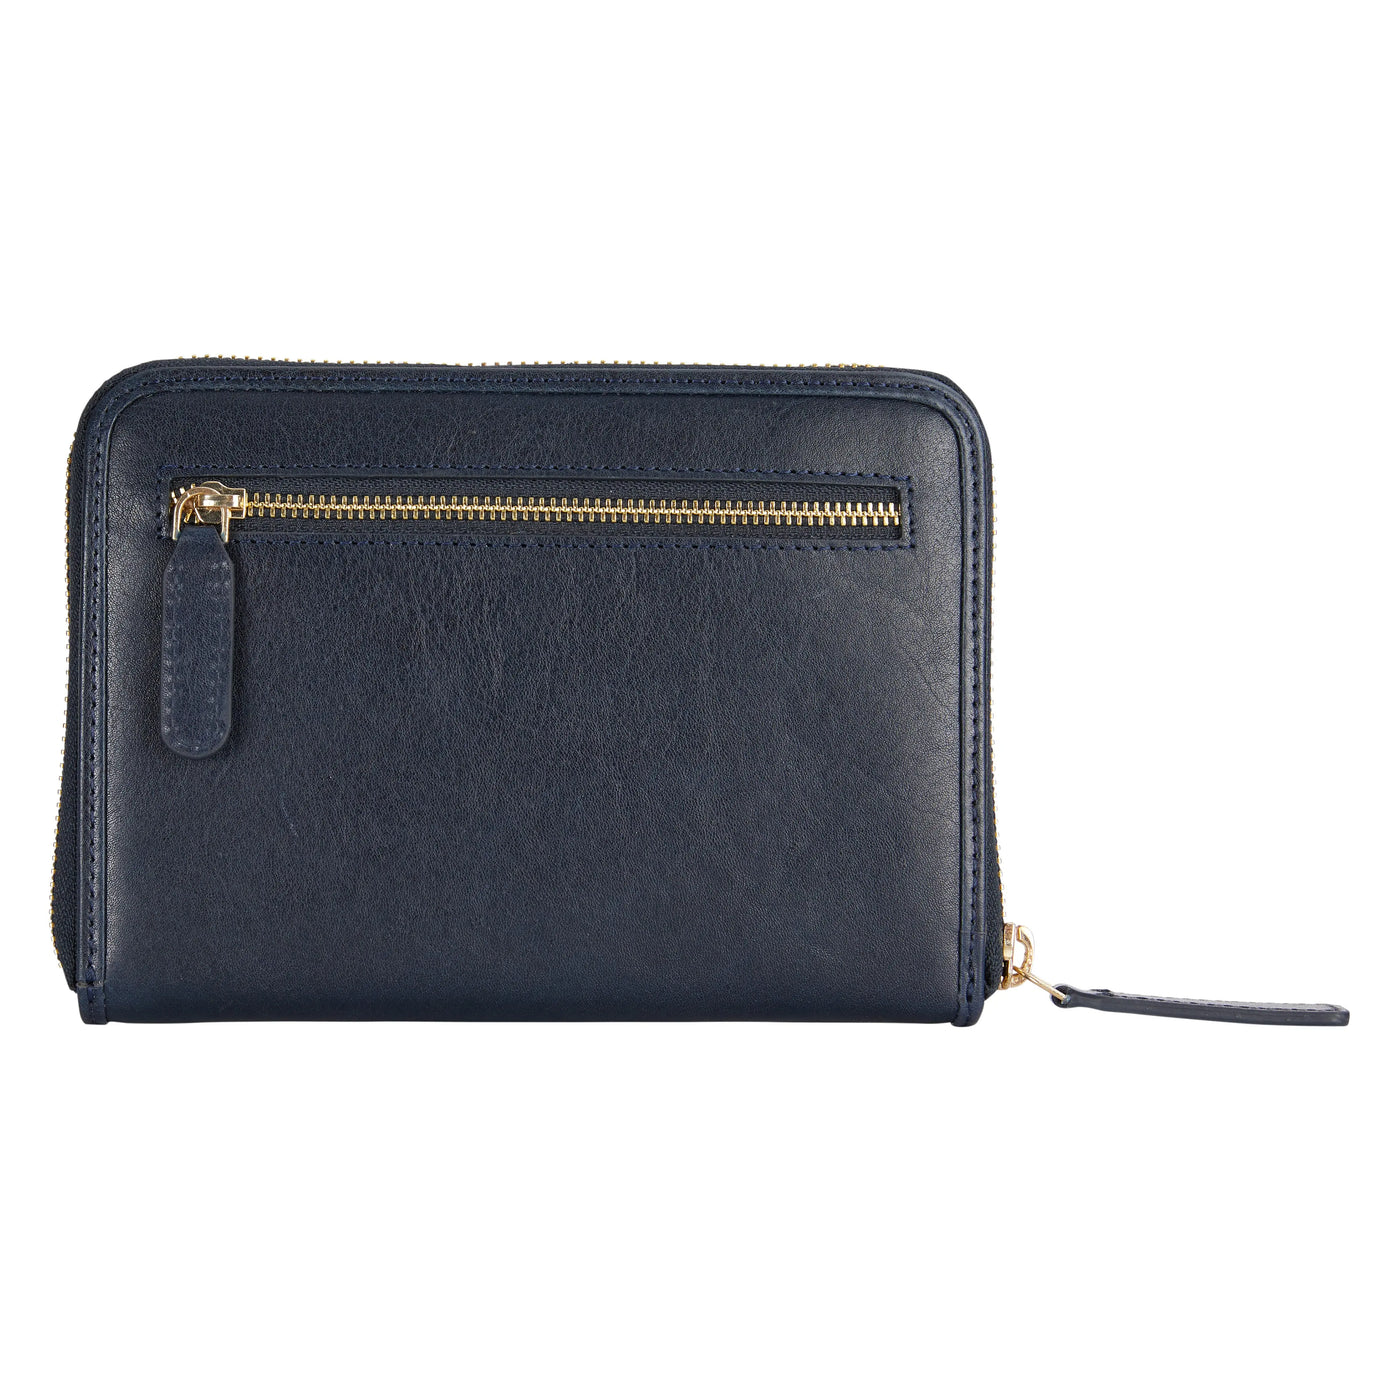 Indigo Leather Wallet dark blue